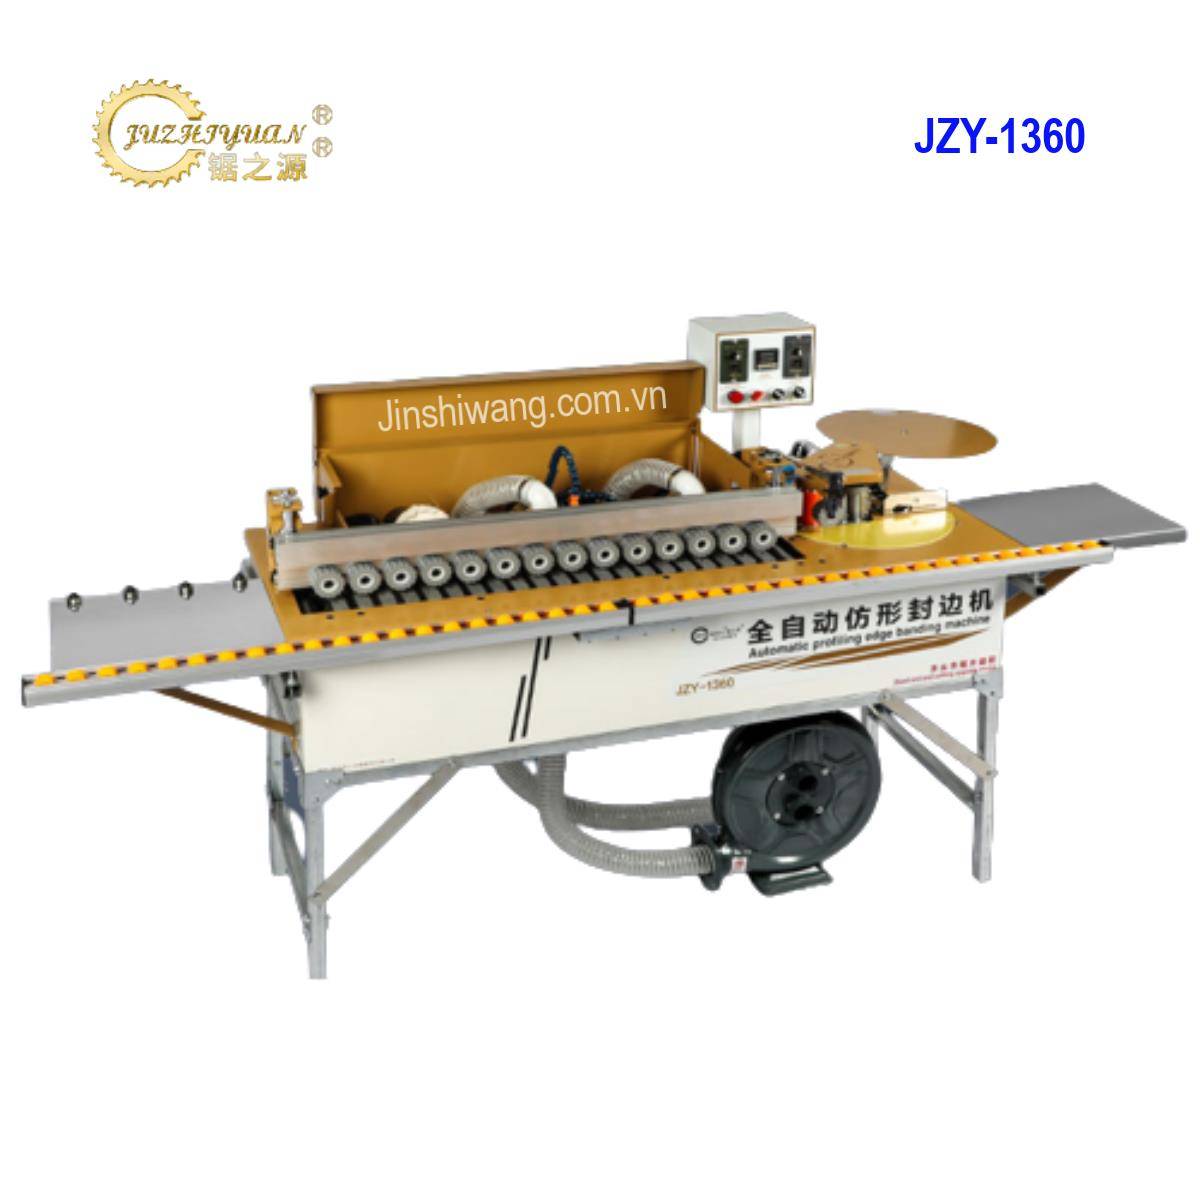 Máy dán cạnh dán chỉ gỗ ông nghiệp tự động 5 chức năng JZY-1360